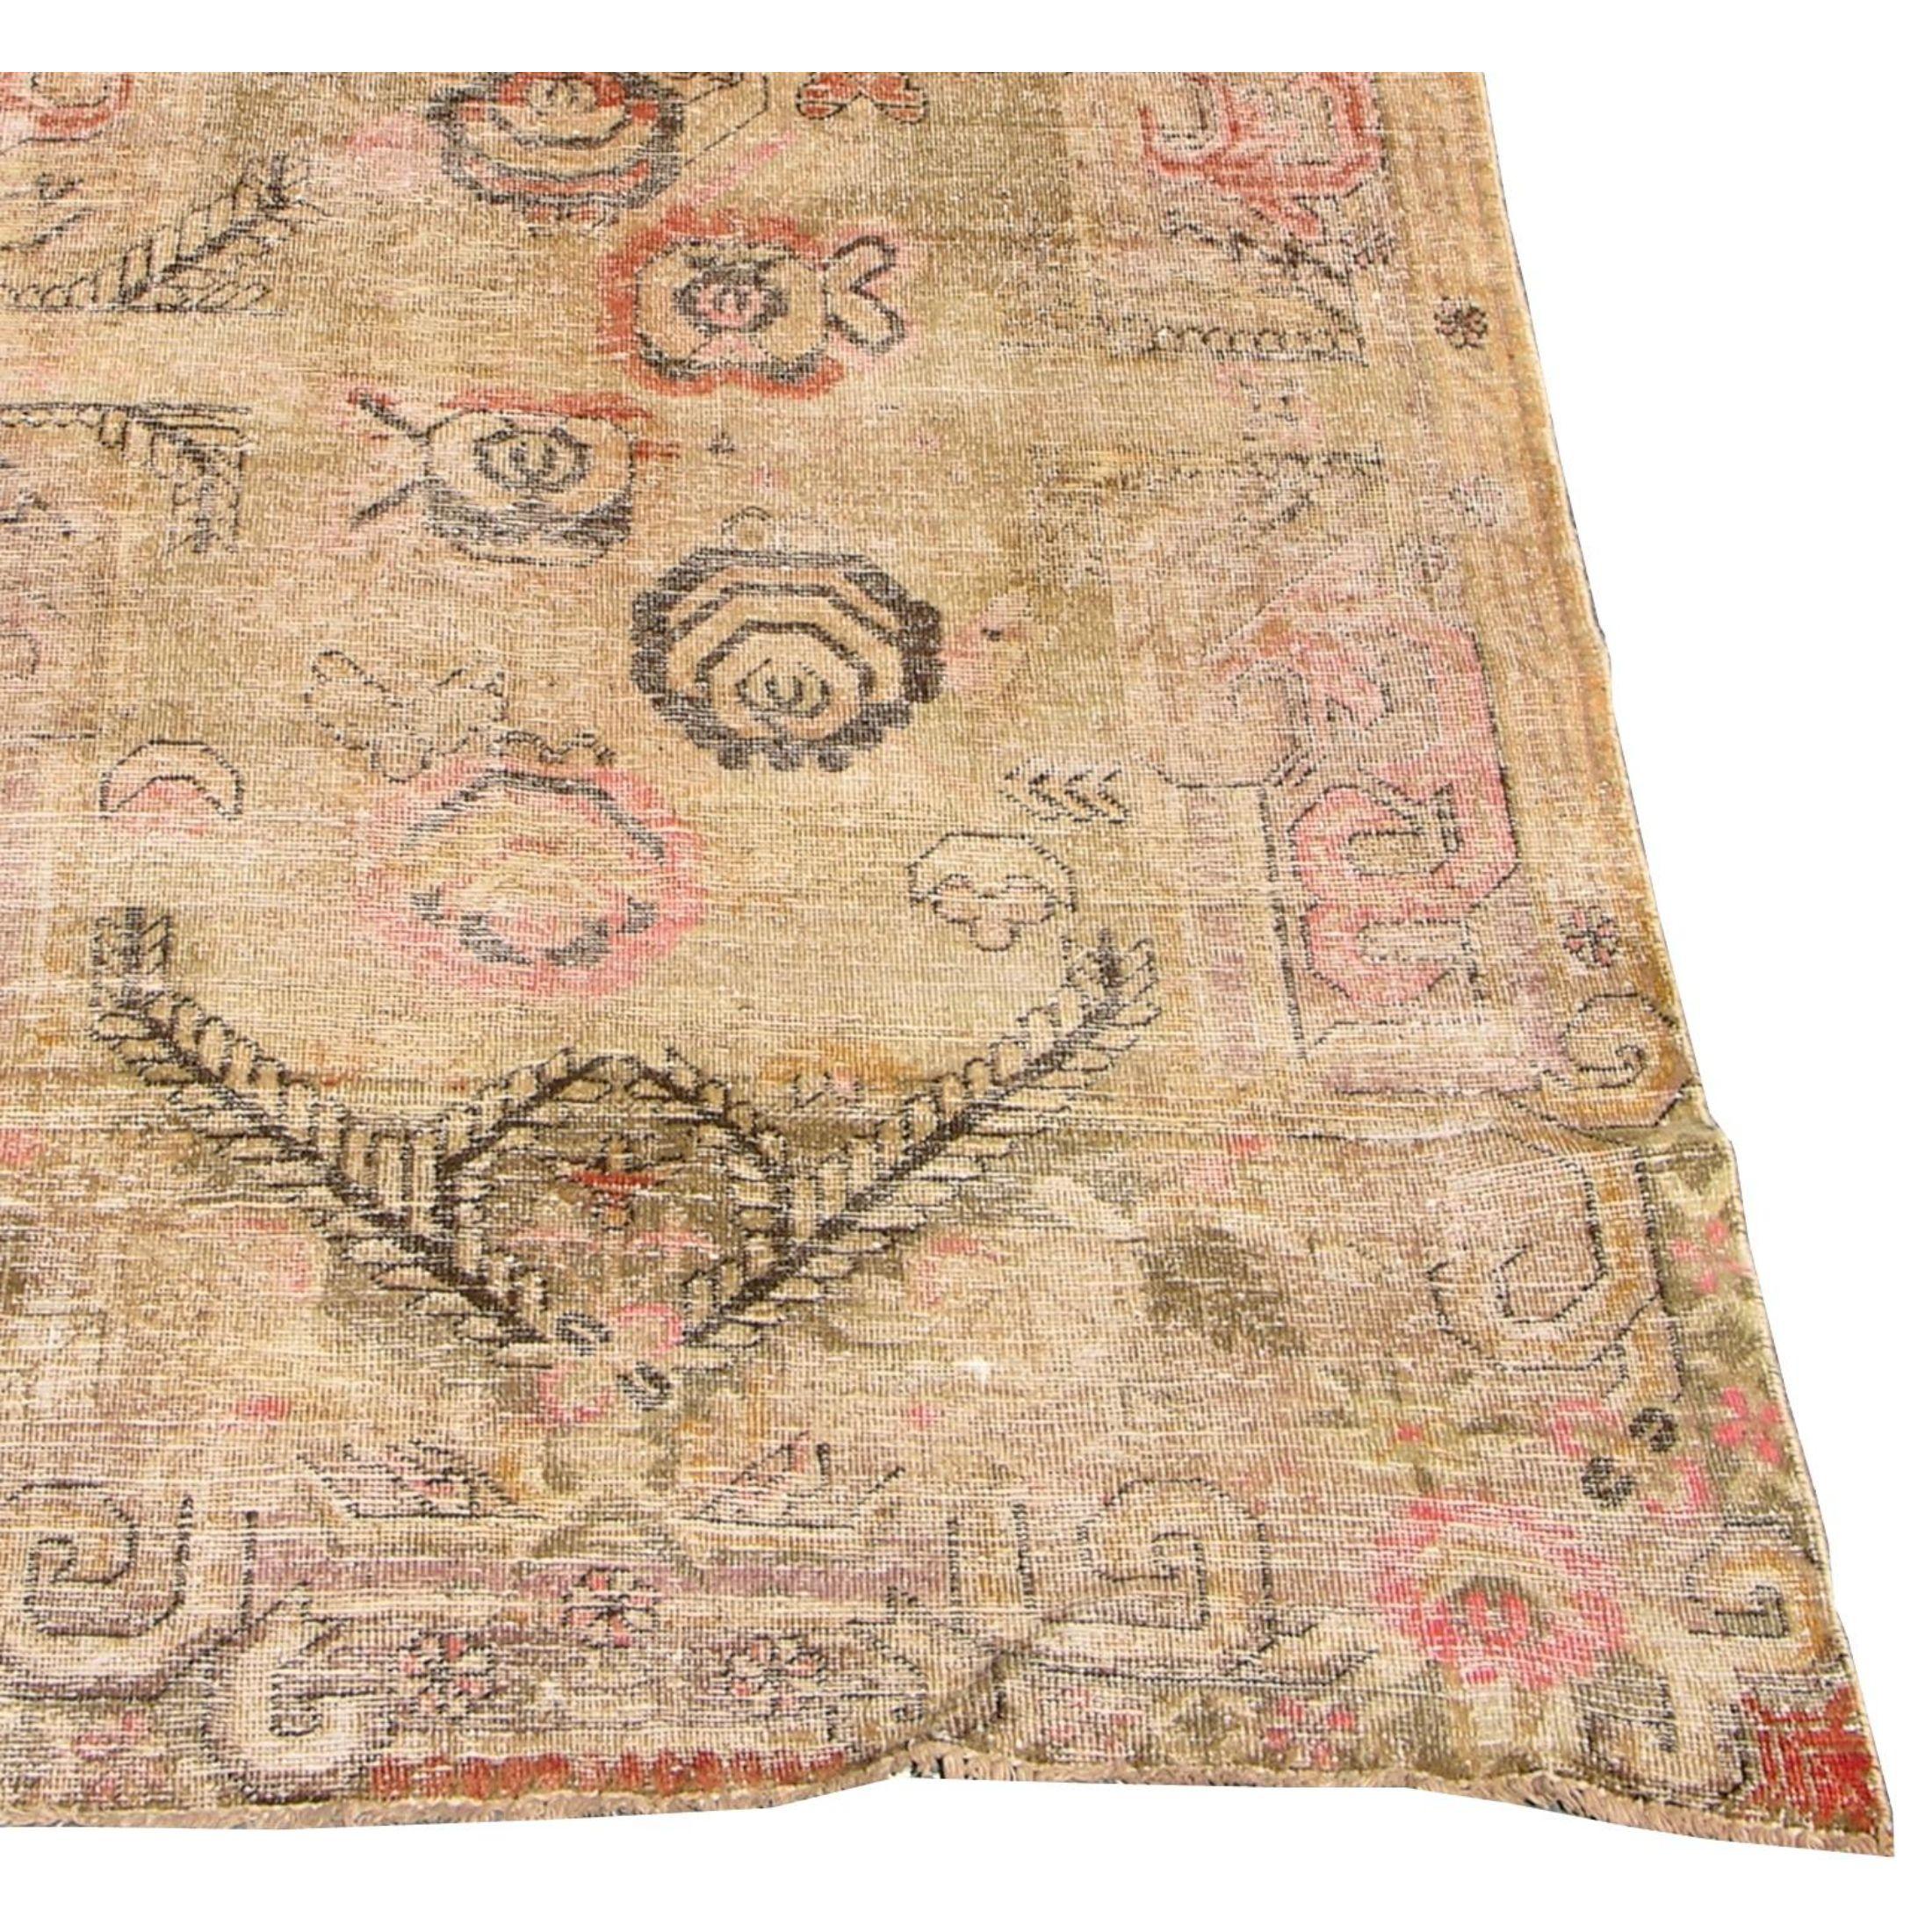 Nous proposons à la vente un tapis ancien Khotan Samarkand, originaire d'Ouzbékistan, datant des années 1900.